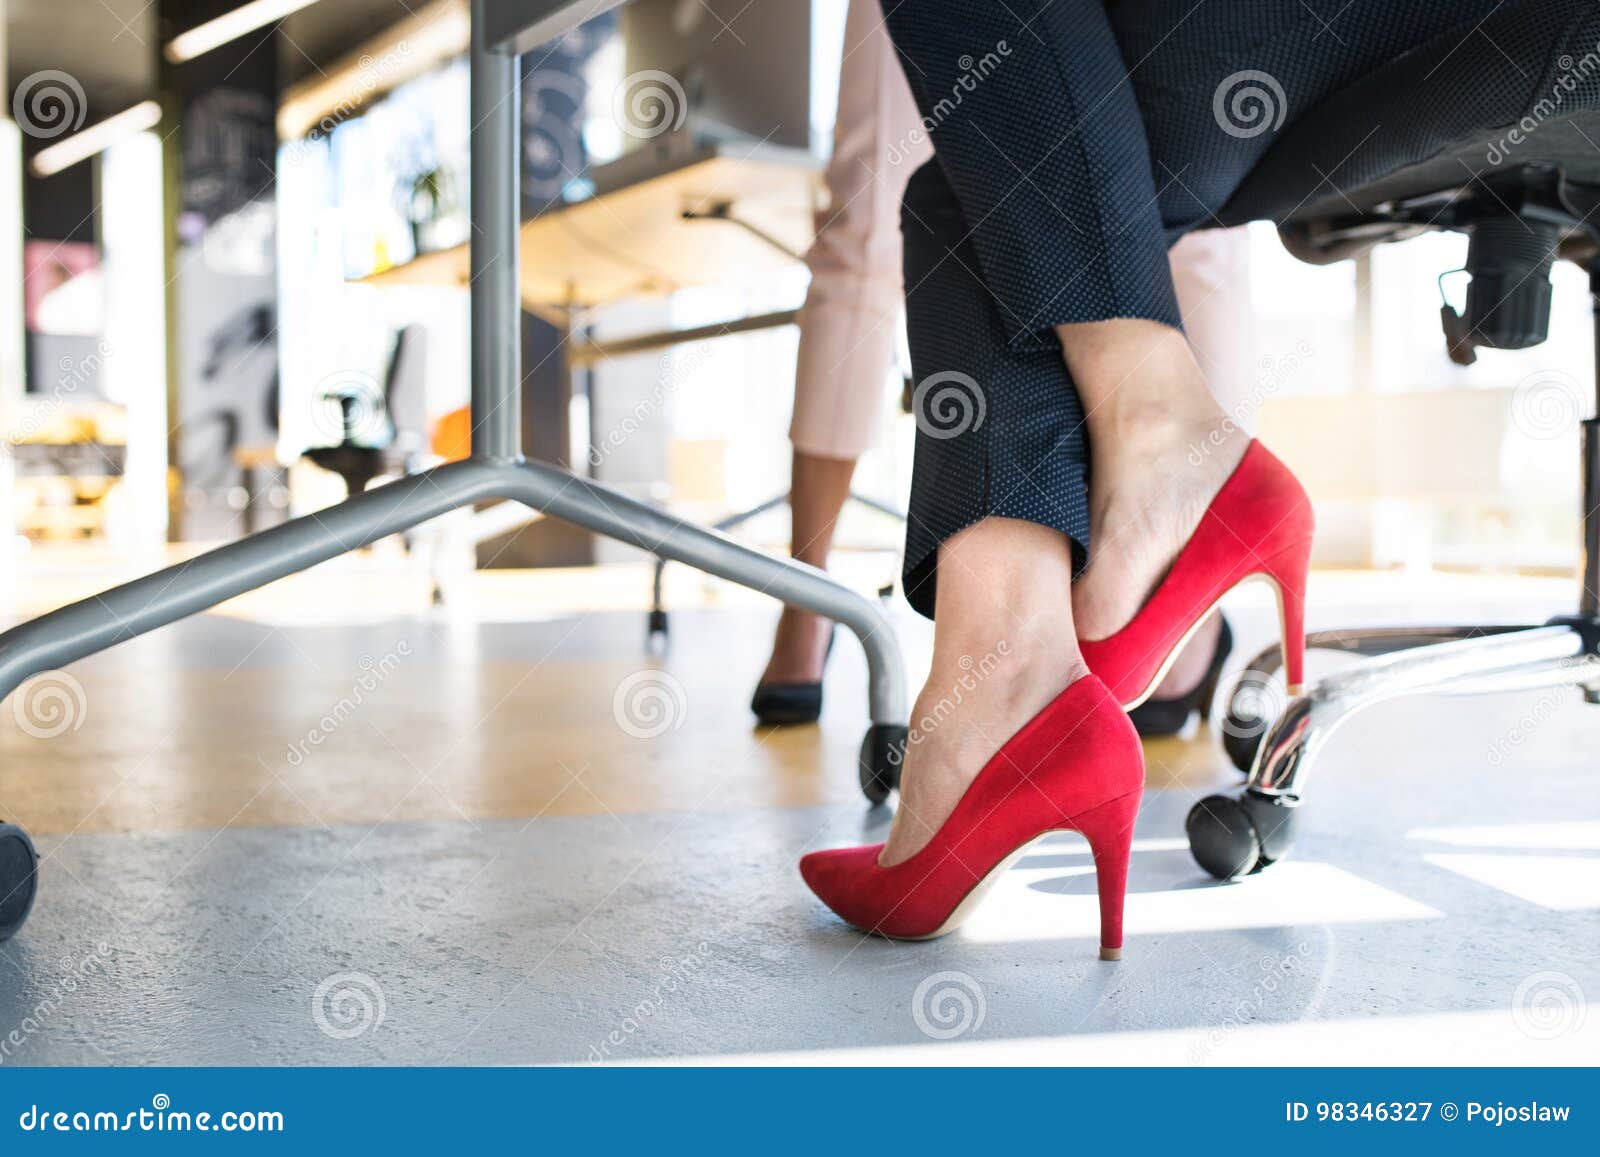 legs of unregognizable business women in high heels.